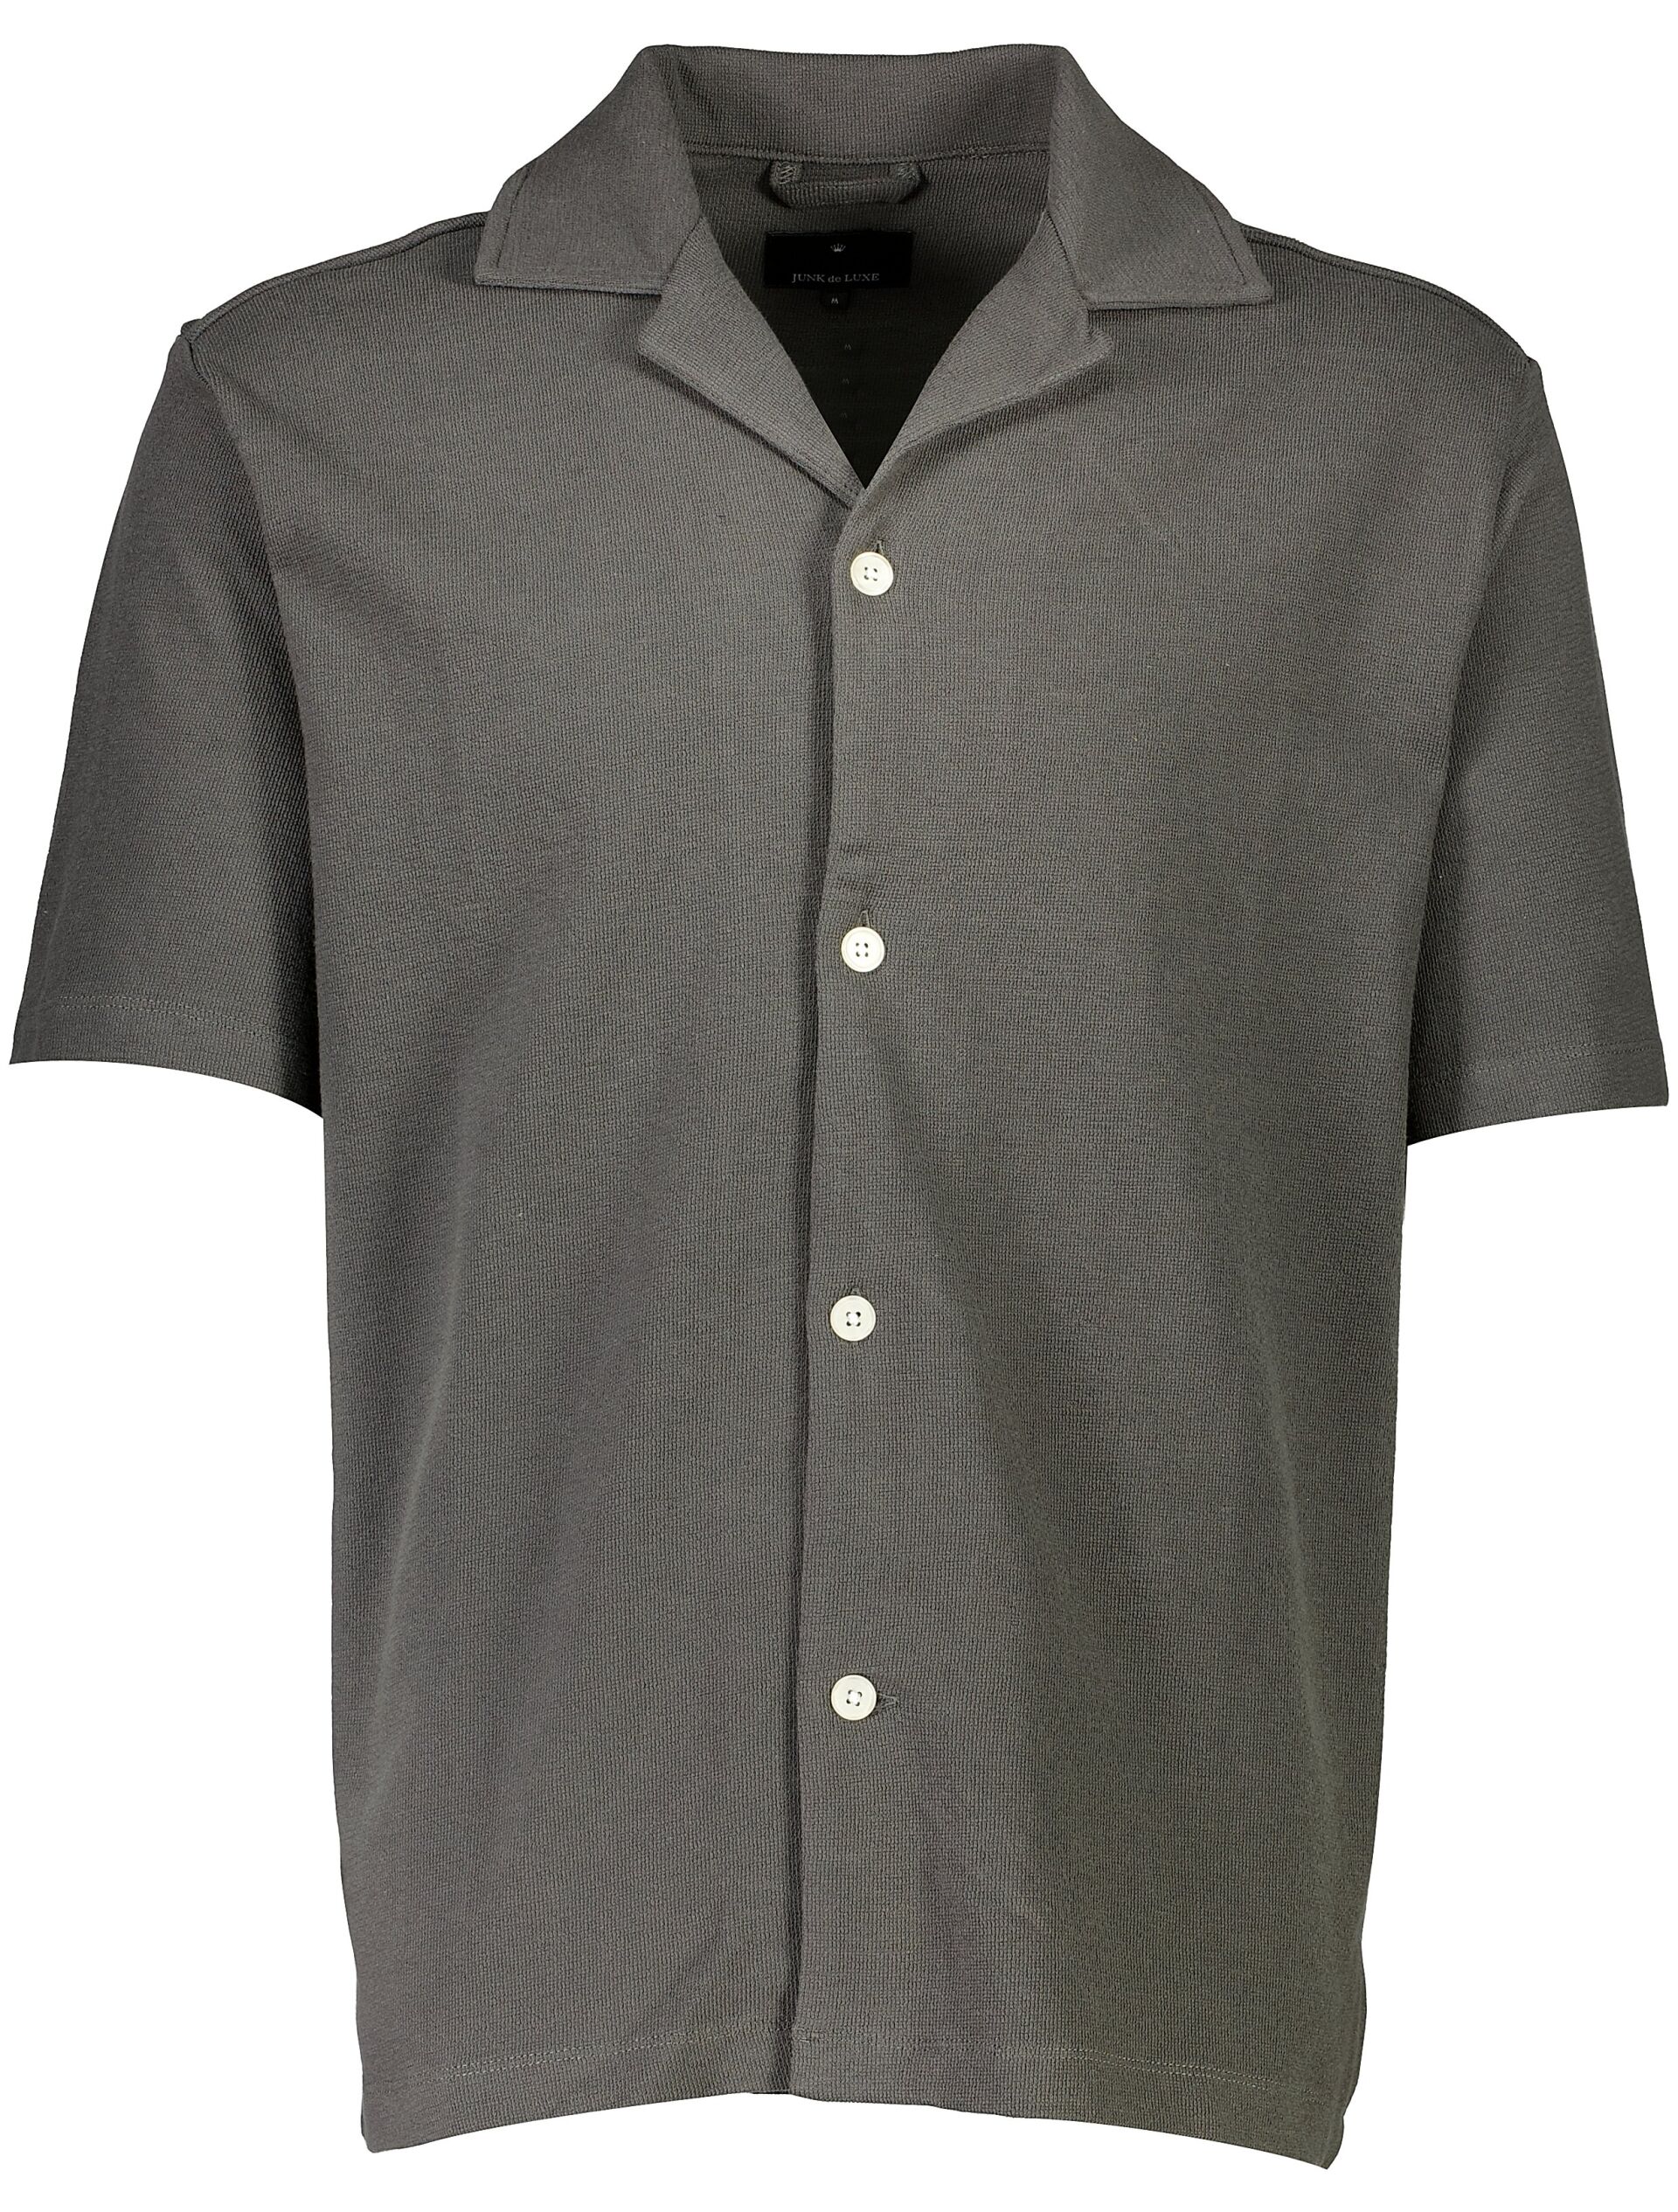 Casual shirt Casual shirt Grey 60-222041